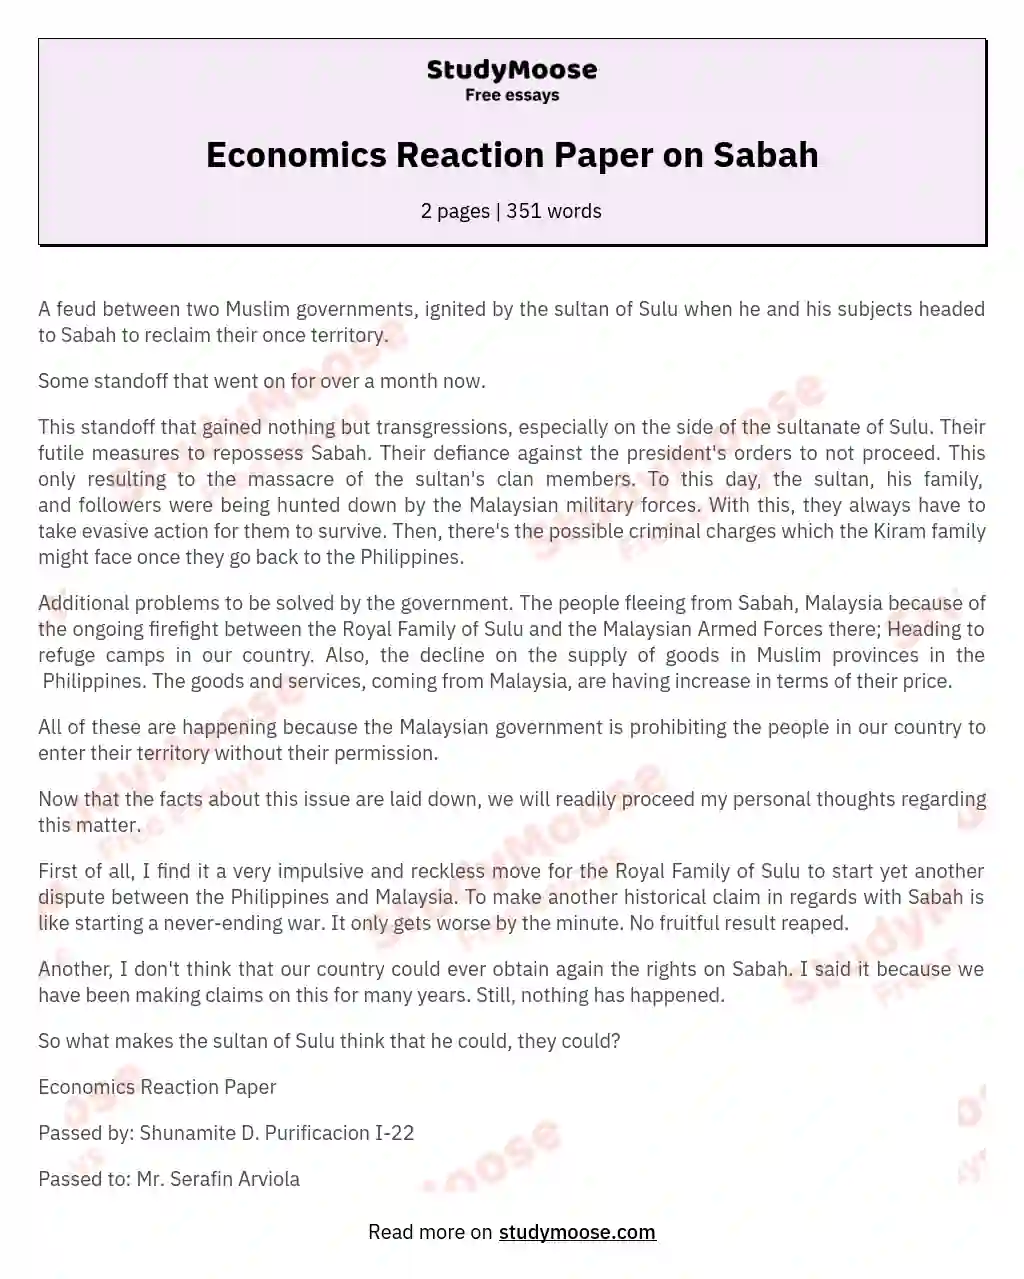 Economics Reaction Paper on Sabah essay